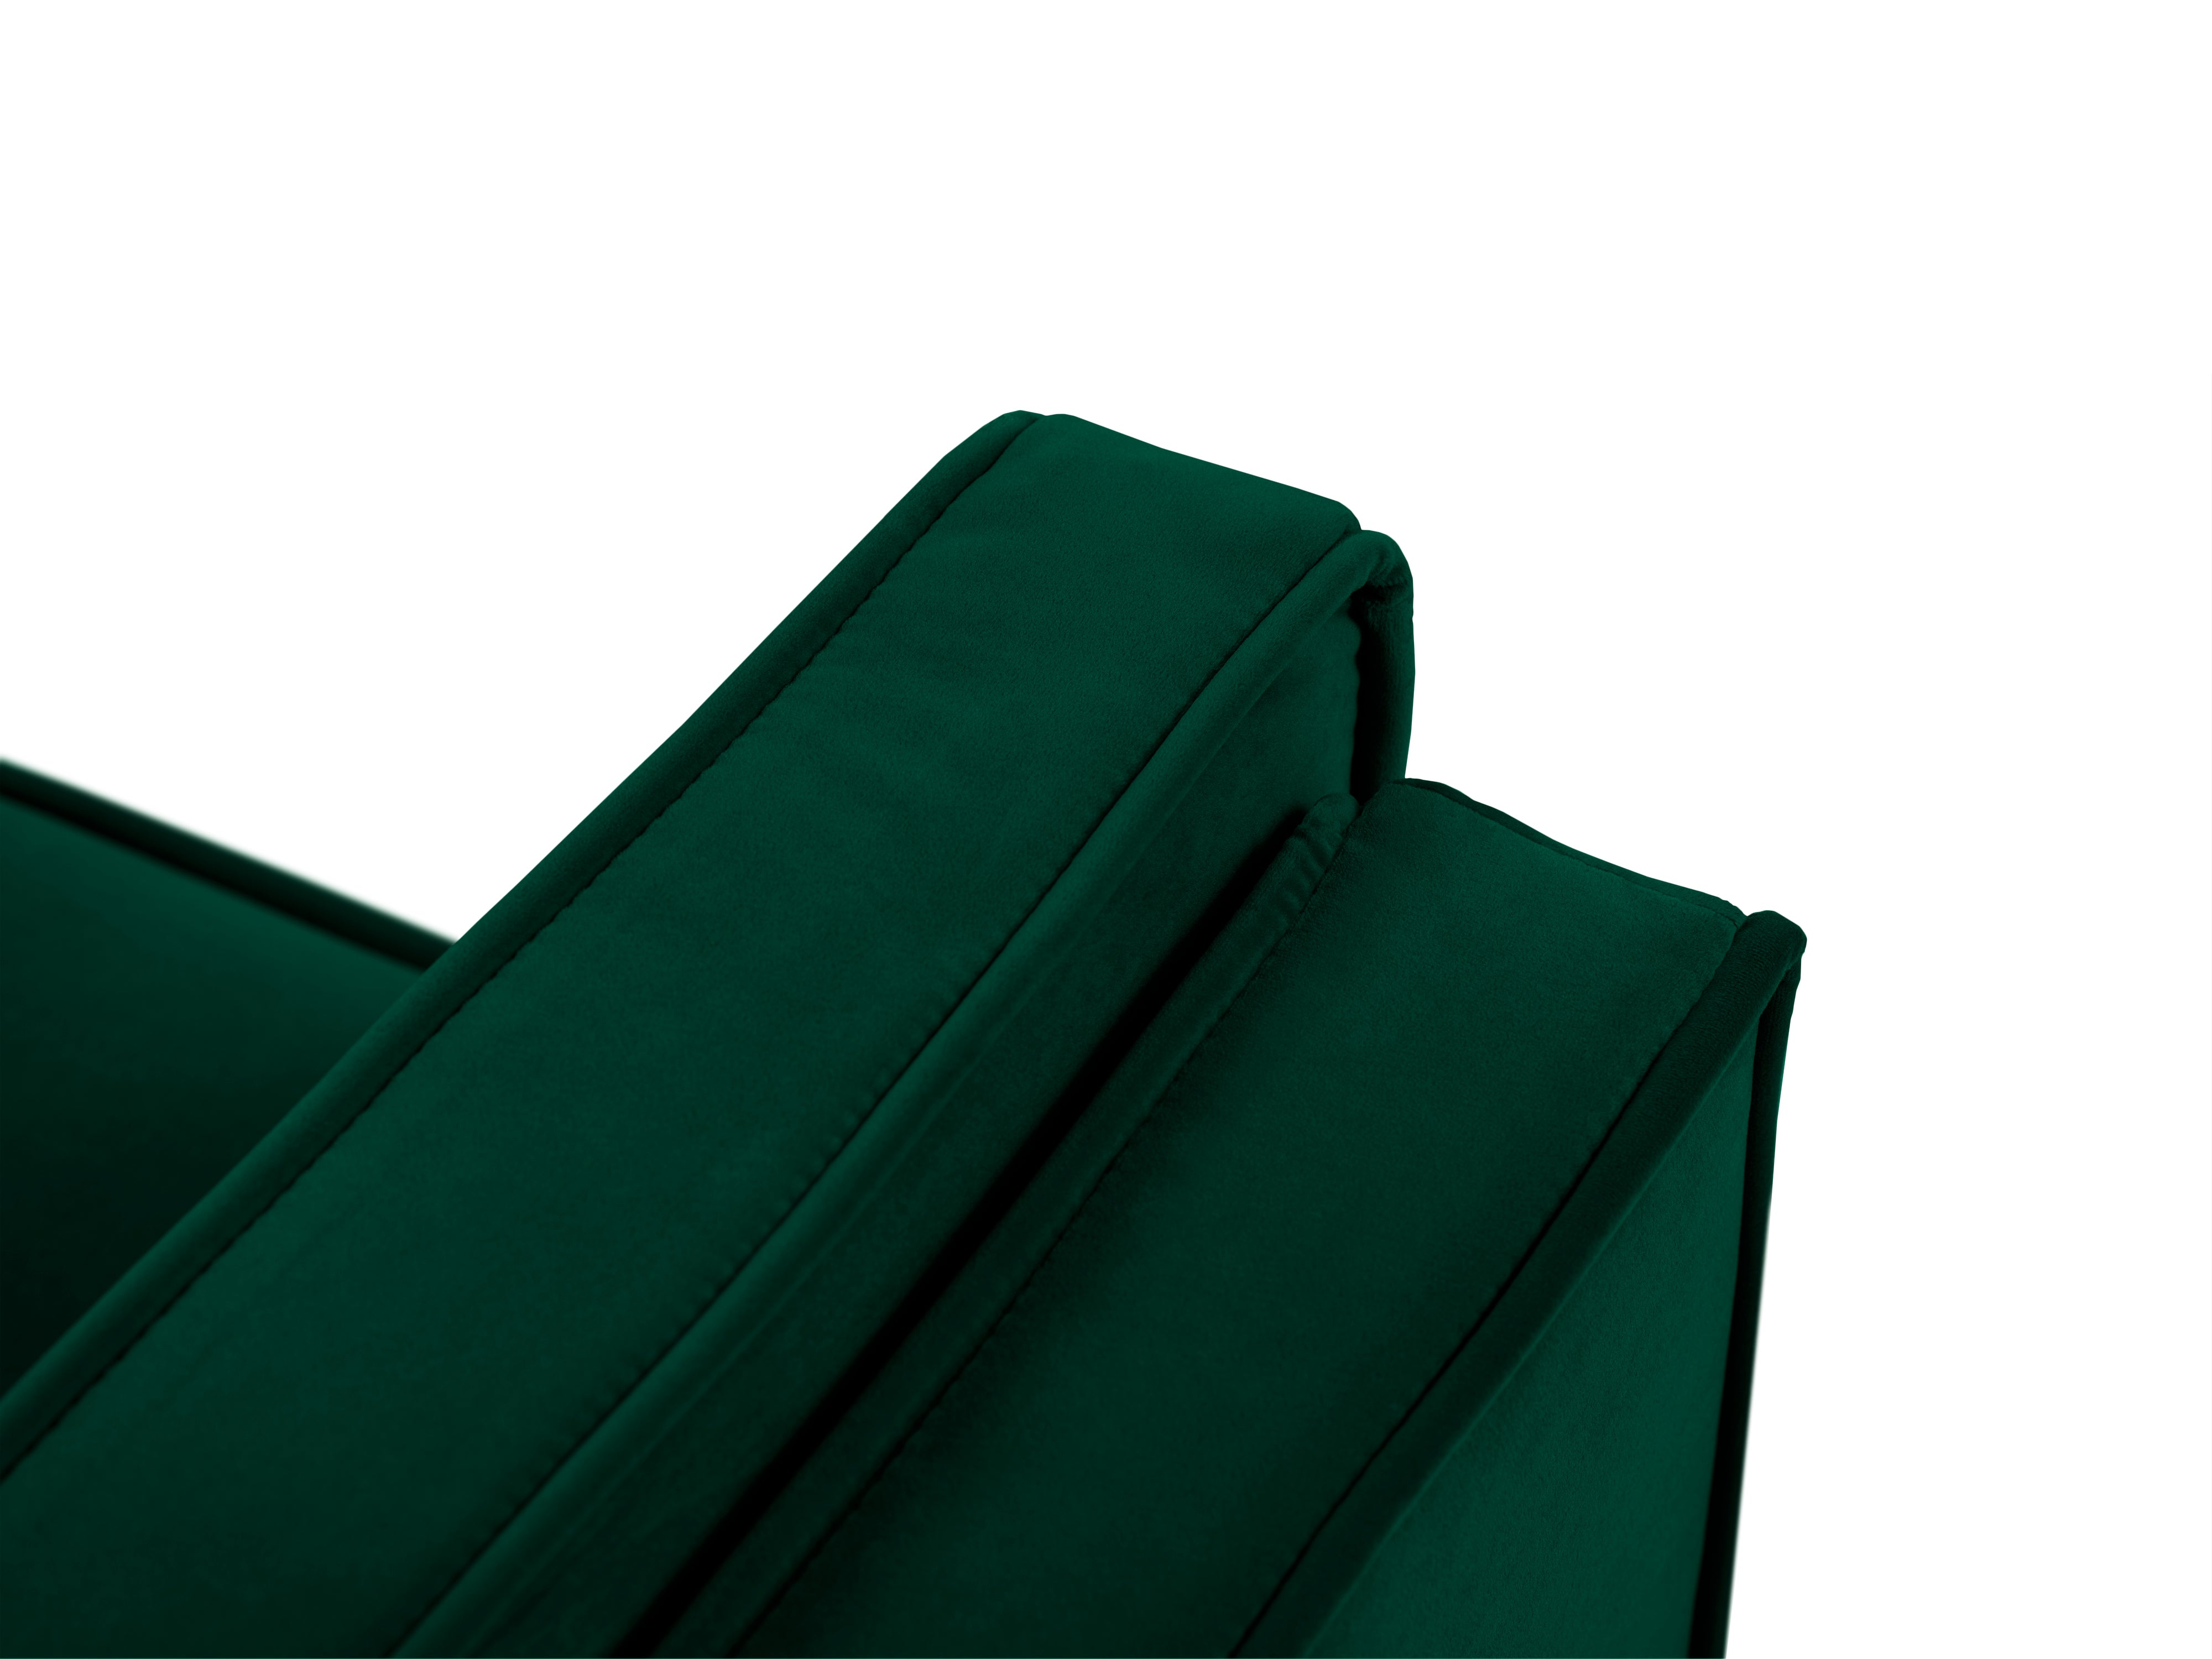 LUIS bottle green velvet 3-seater sofa with black base